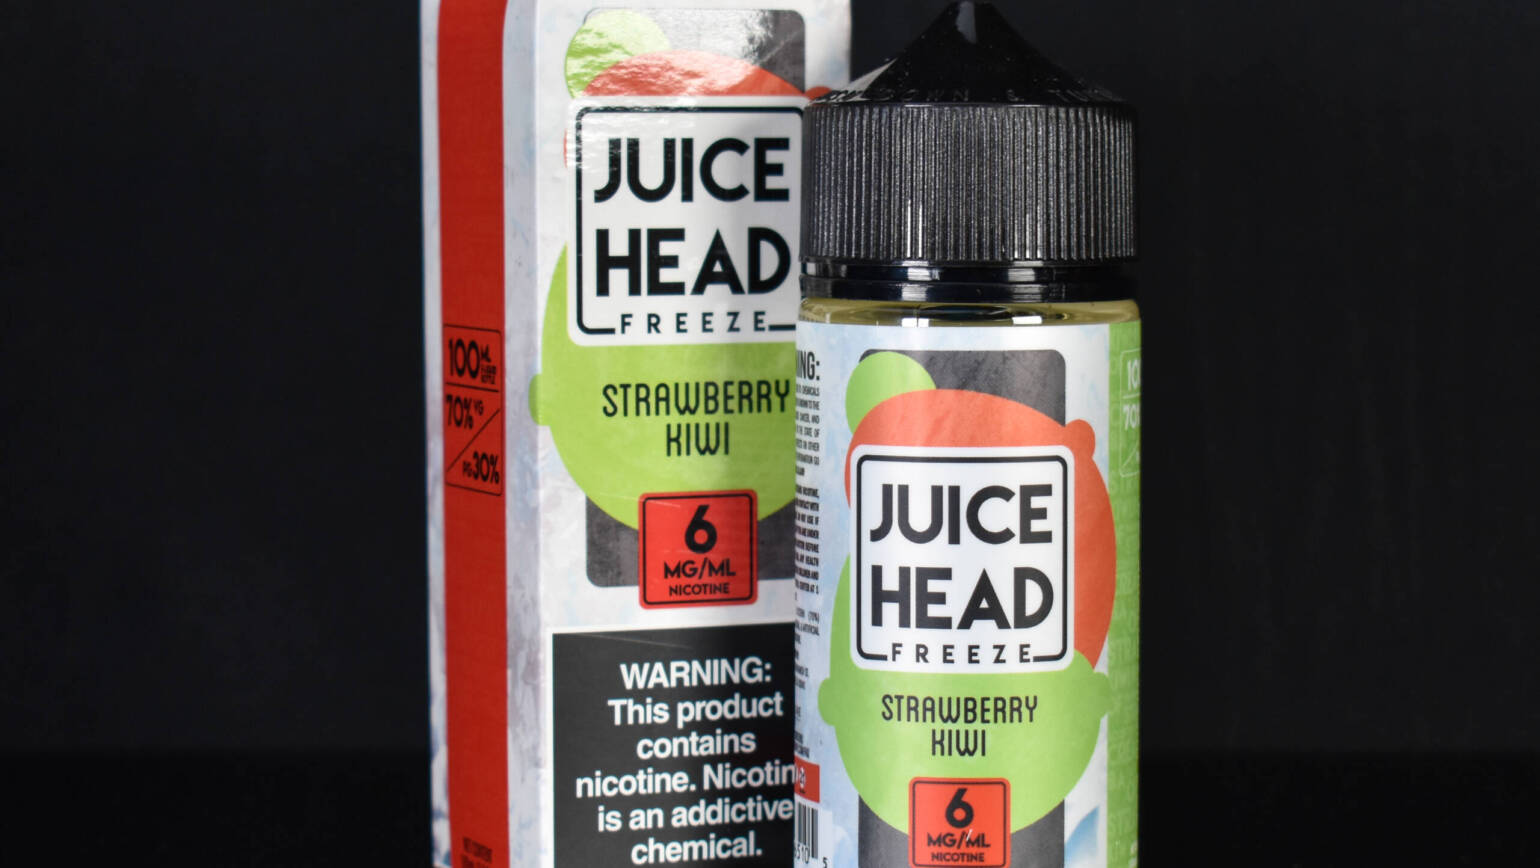 Juice Head – Strawberry Kiwi FREEZE